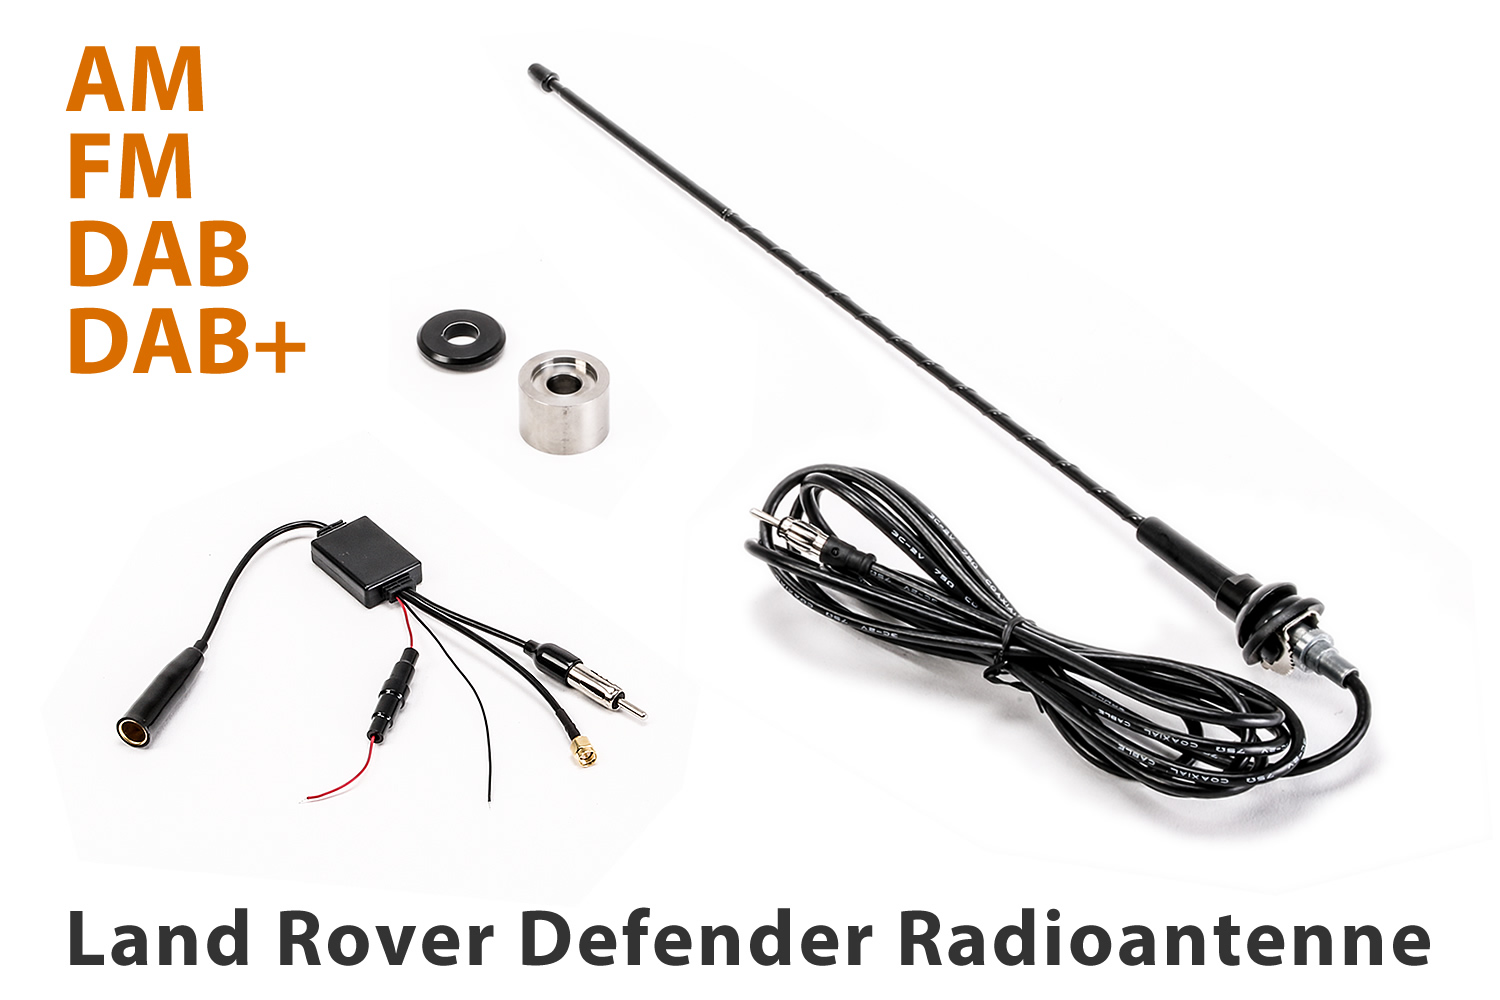 https://www.nakatanenga.de/media/image/87/83/da/radio-antenne-land-rover-defender-am-fm-dab-dabplus-02.jpg